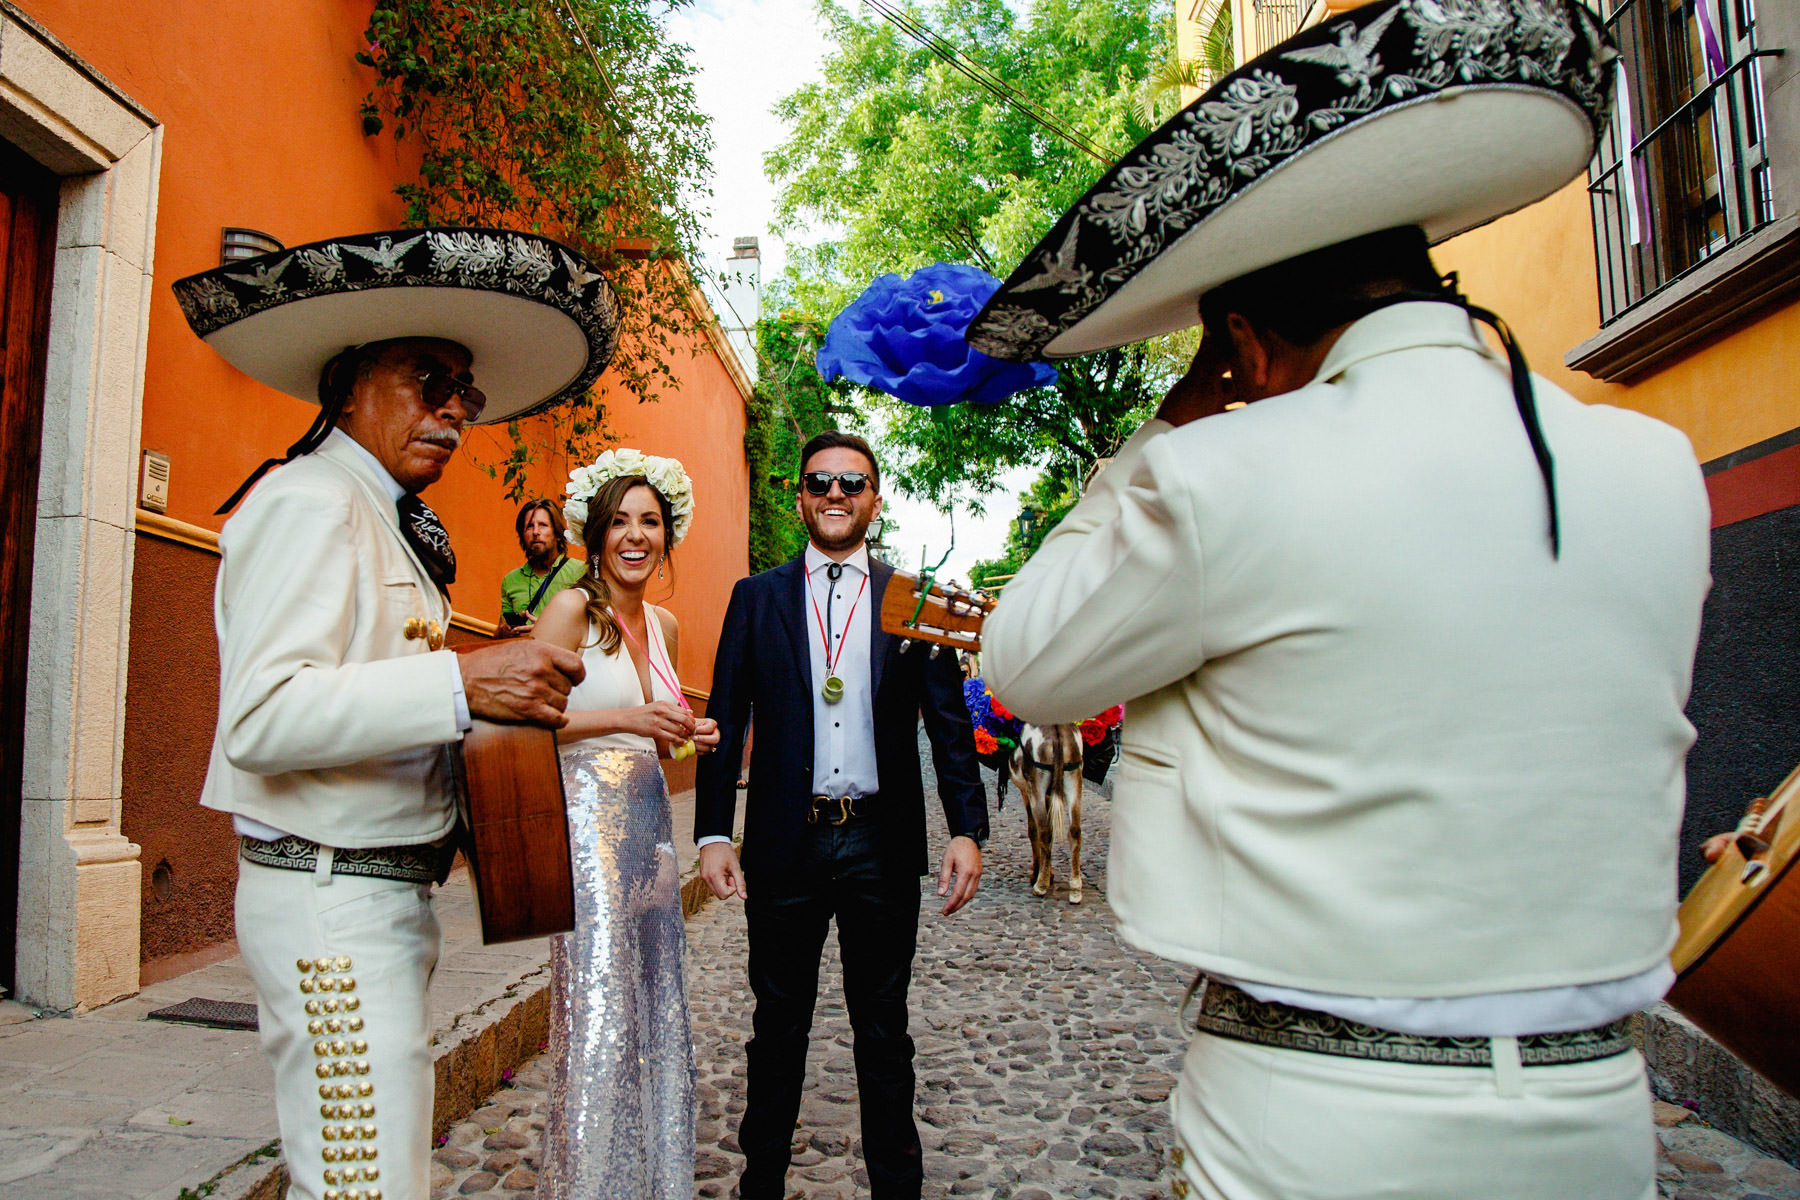 Callejoneada wedding in San Miguel de Allende